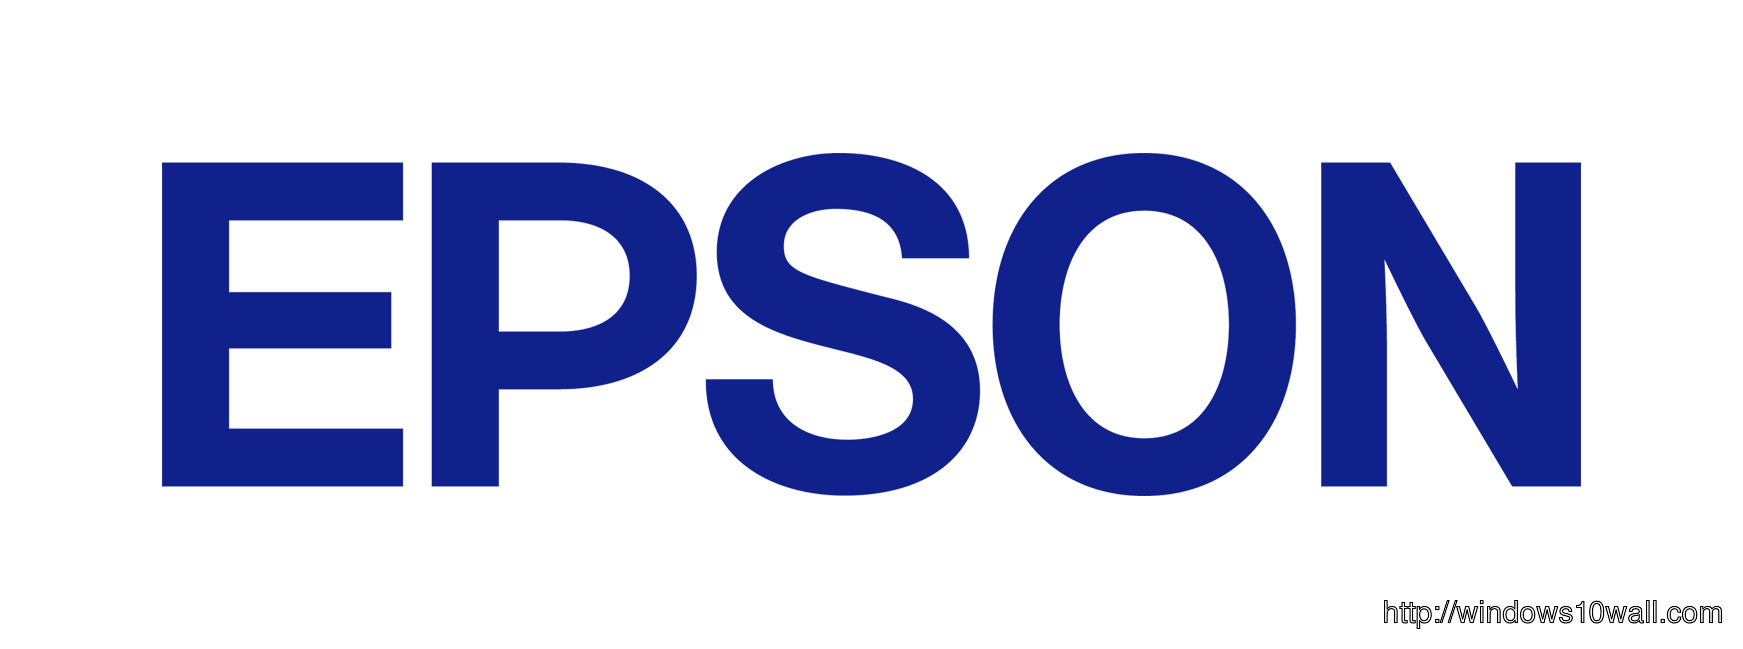 EPSON logo gallery for logo lovers